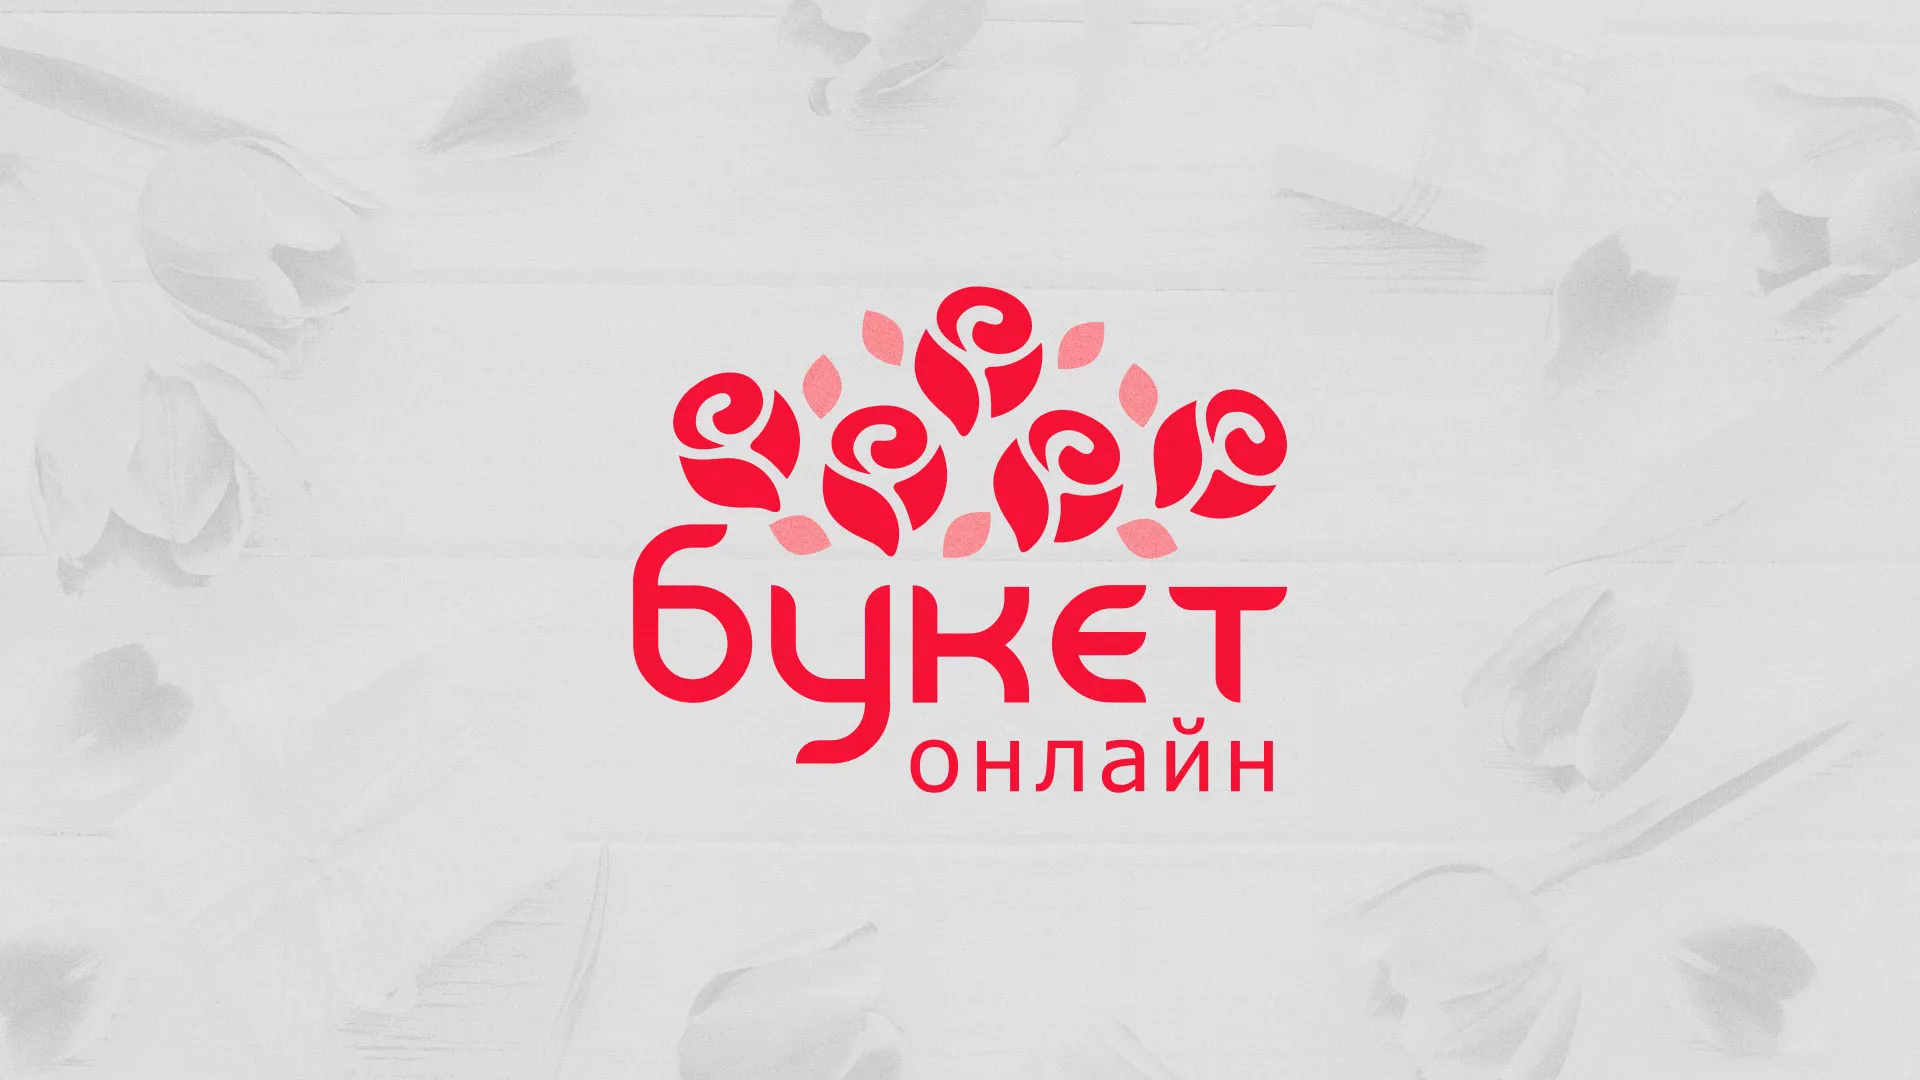 Создание интернет-магазина «Букет-онлайн» по цветам в Новокузнецке